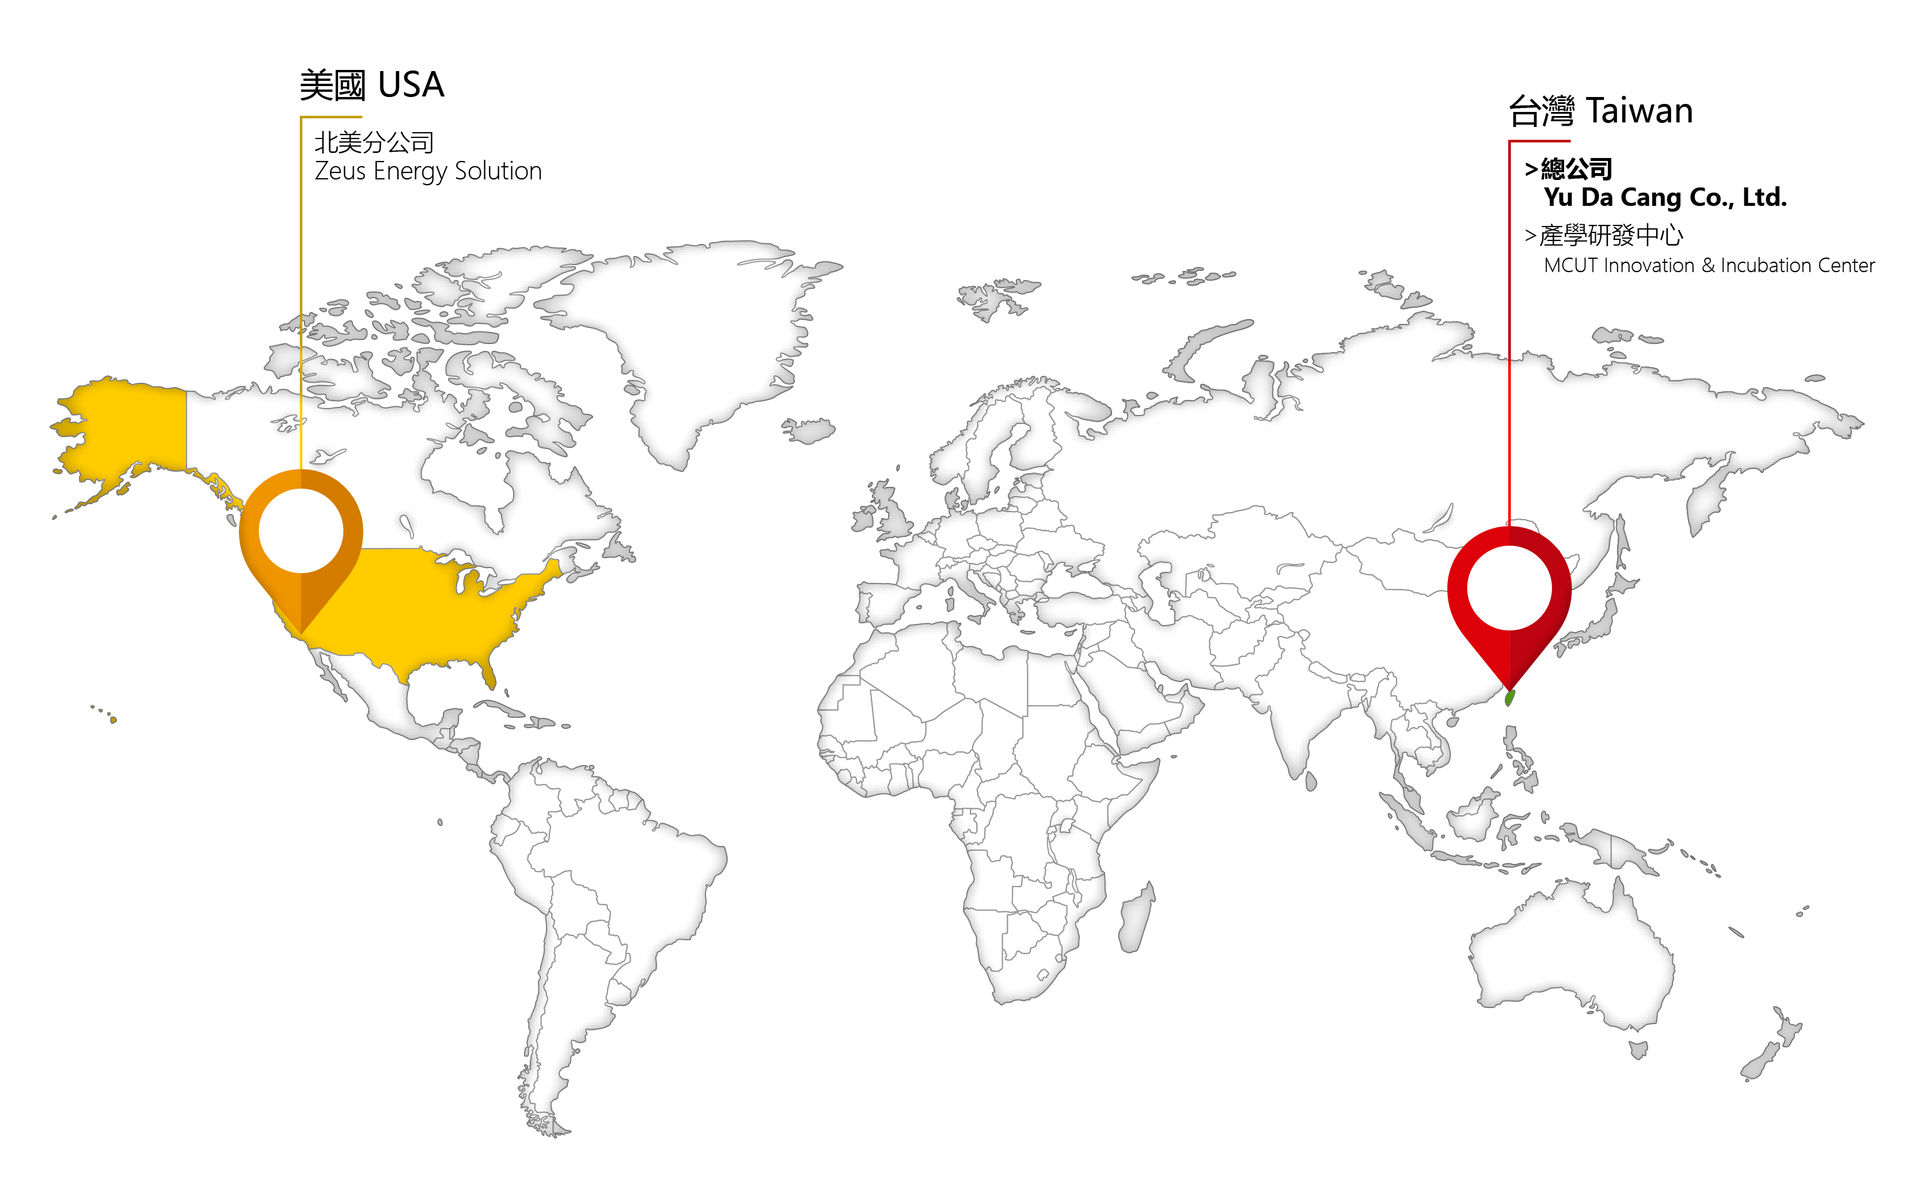 御大倉台灣總部、產學研發中心與北美分公司的世界地圖圖示